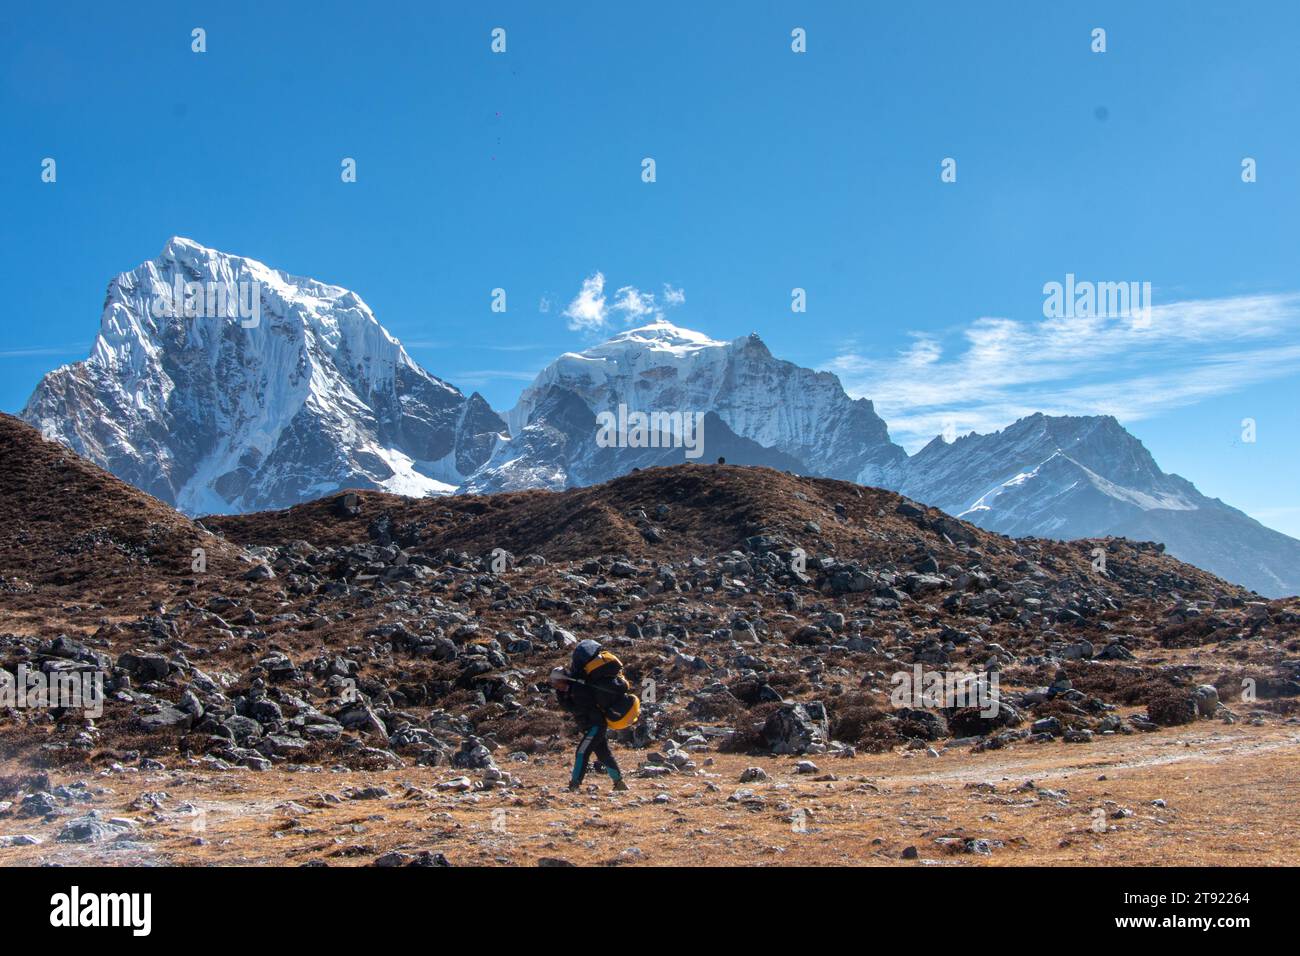 Imbarcati in un viaggio magico: Potter esplora i paesaggi mozzafiato del campo base dell'Everest, dove si trova la vera magia. Foto Stock